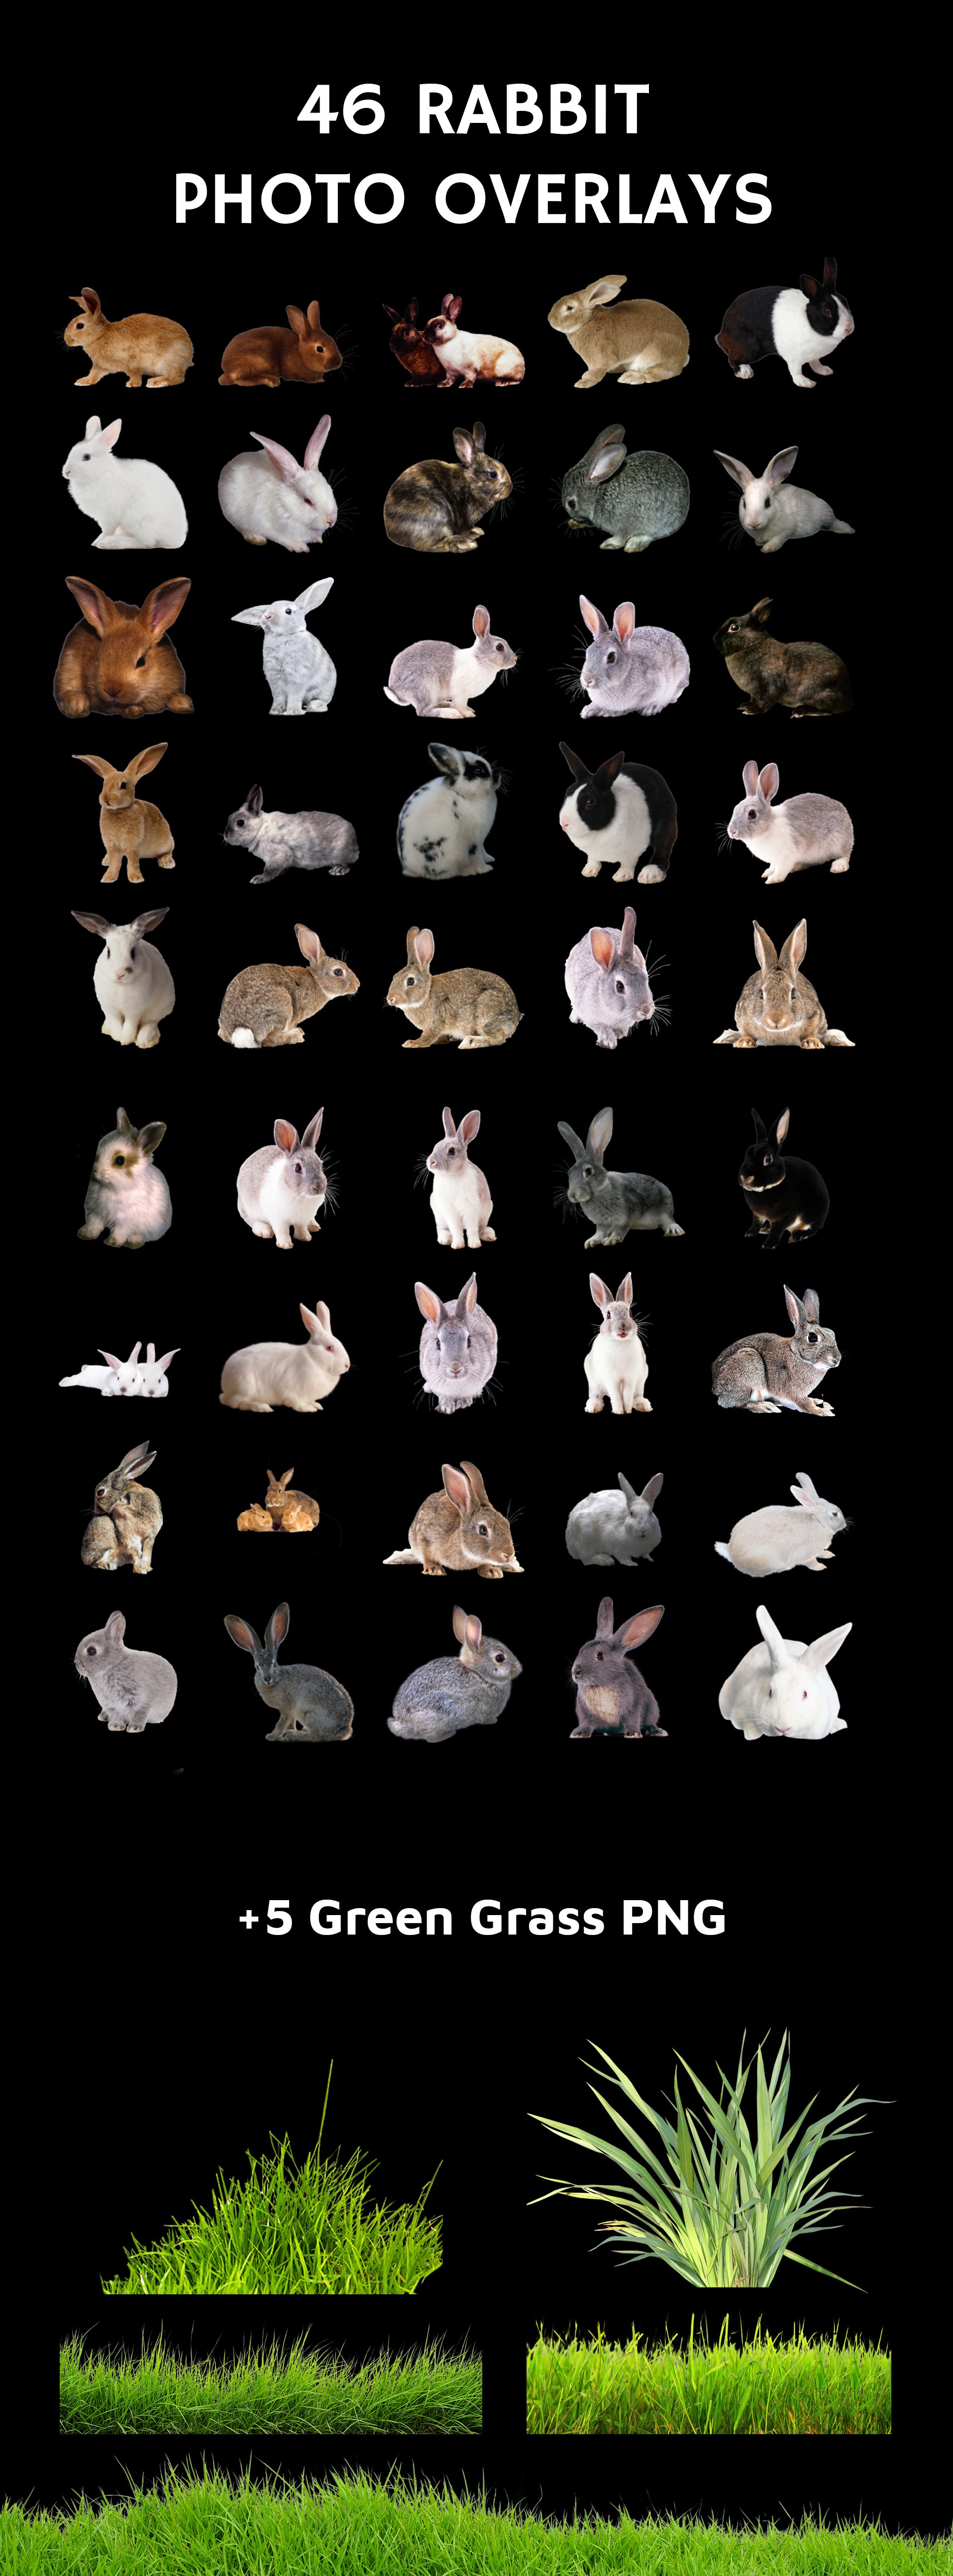 rabbitsadv all 147